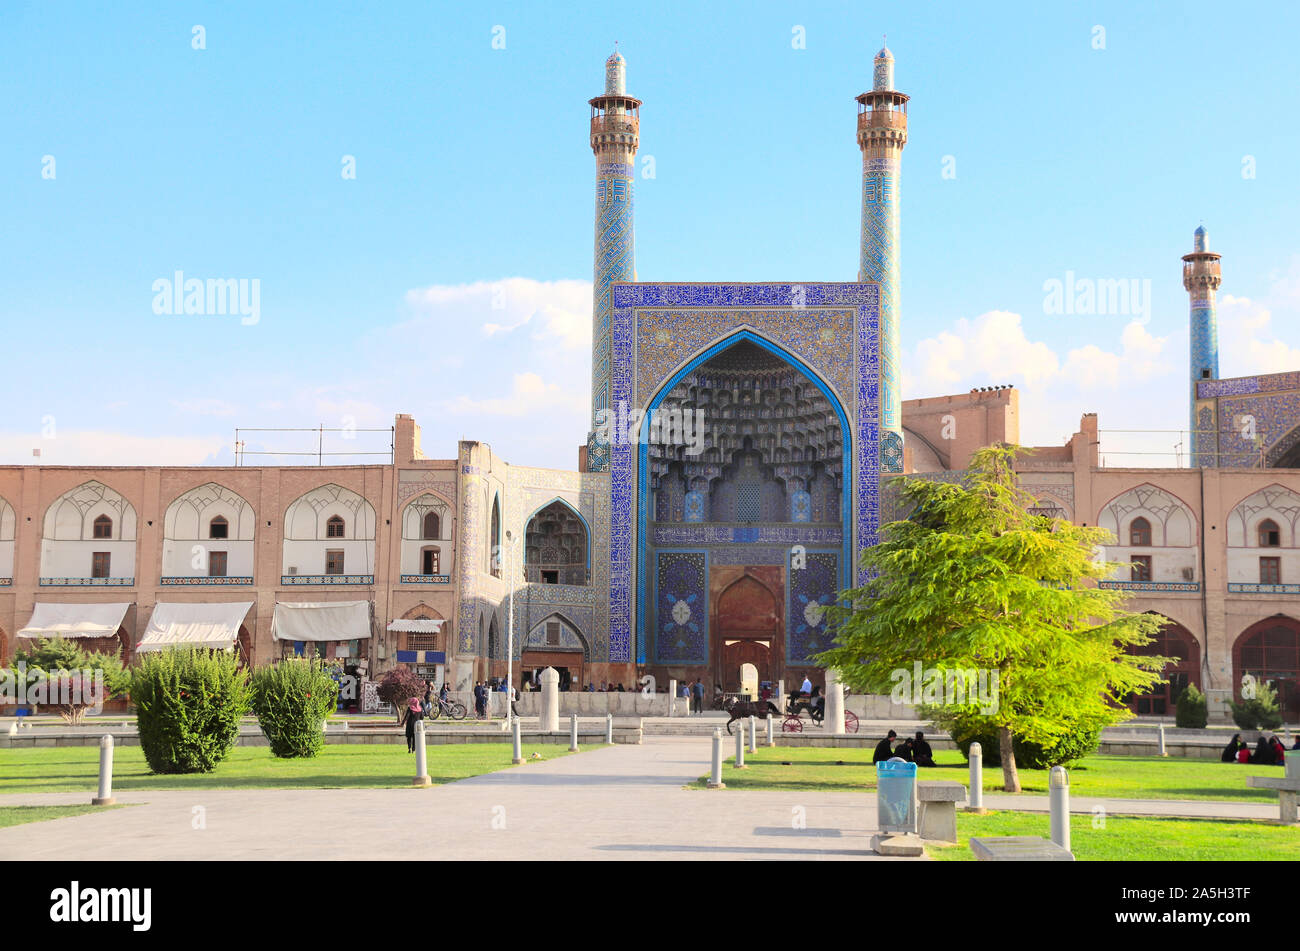 Imam moschea su Naqsh-e JAHAN Piazza (Piazza Shah, Imam Square), il secondo più grande luogo del mondo, Isfahan, Iran. UNESCO siti del Patrimonio mondiale Foto Stock